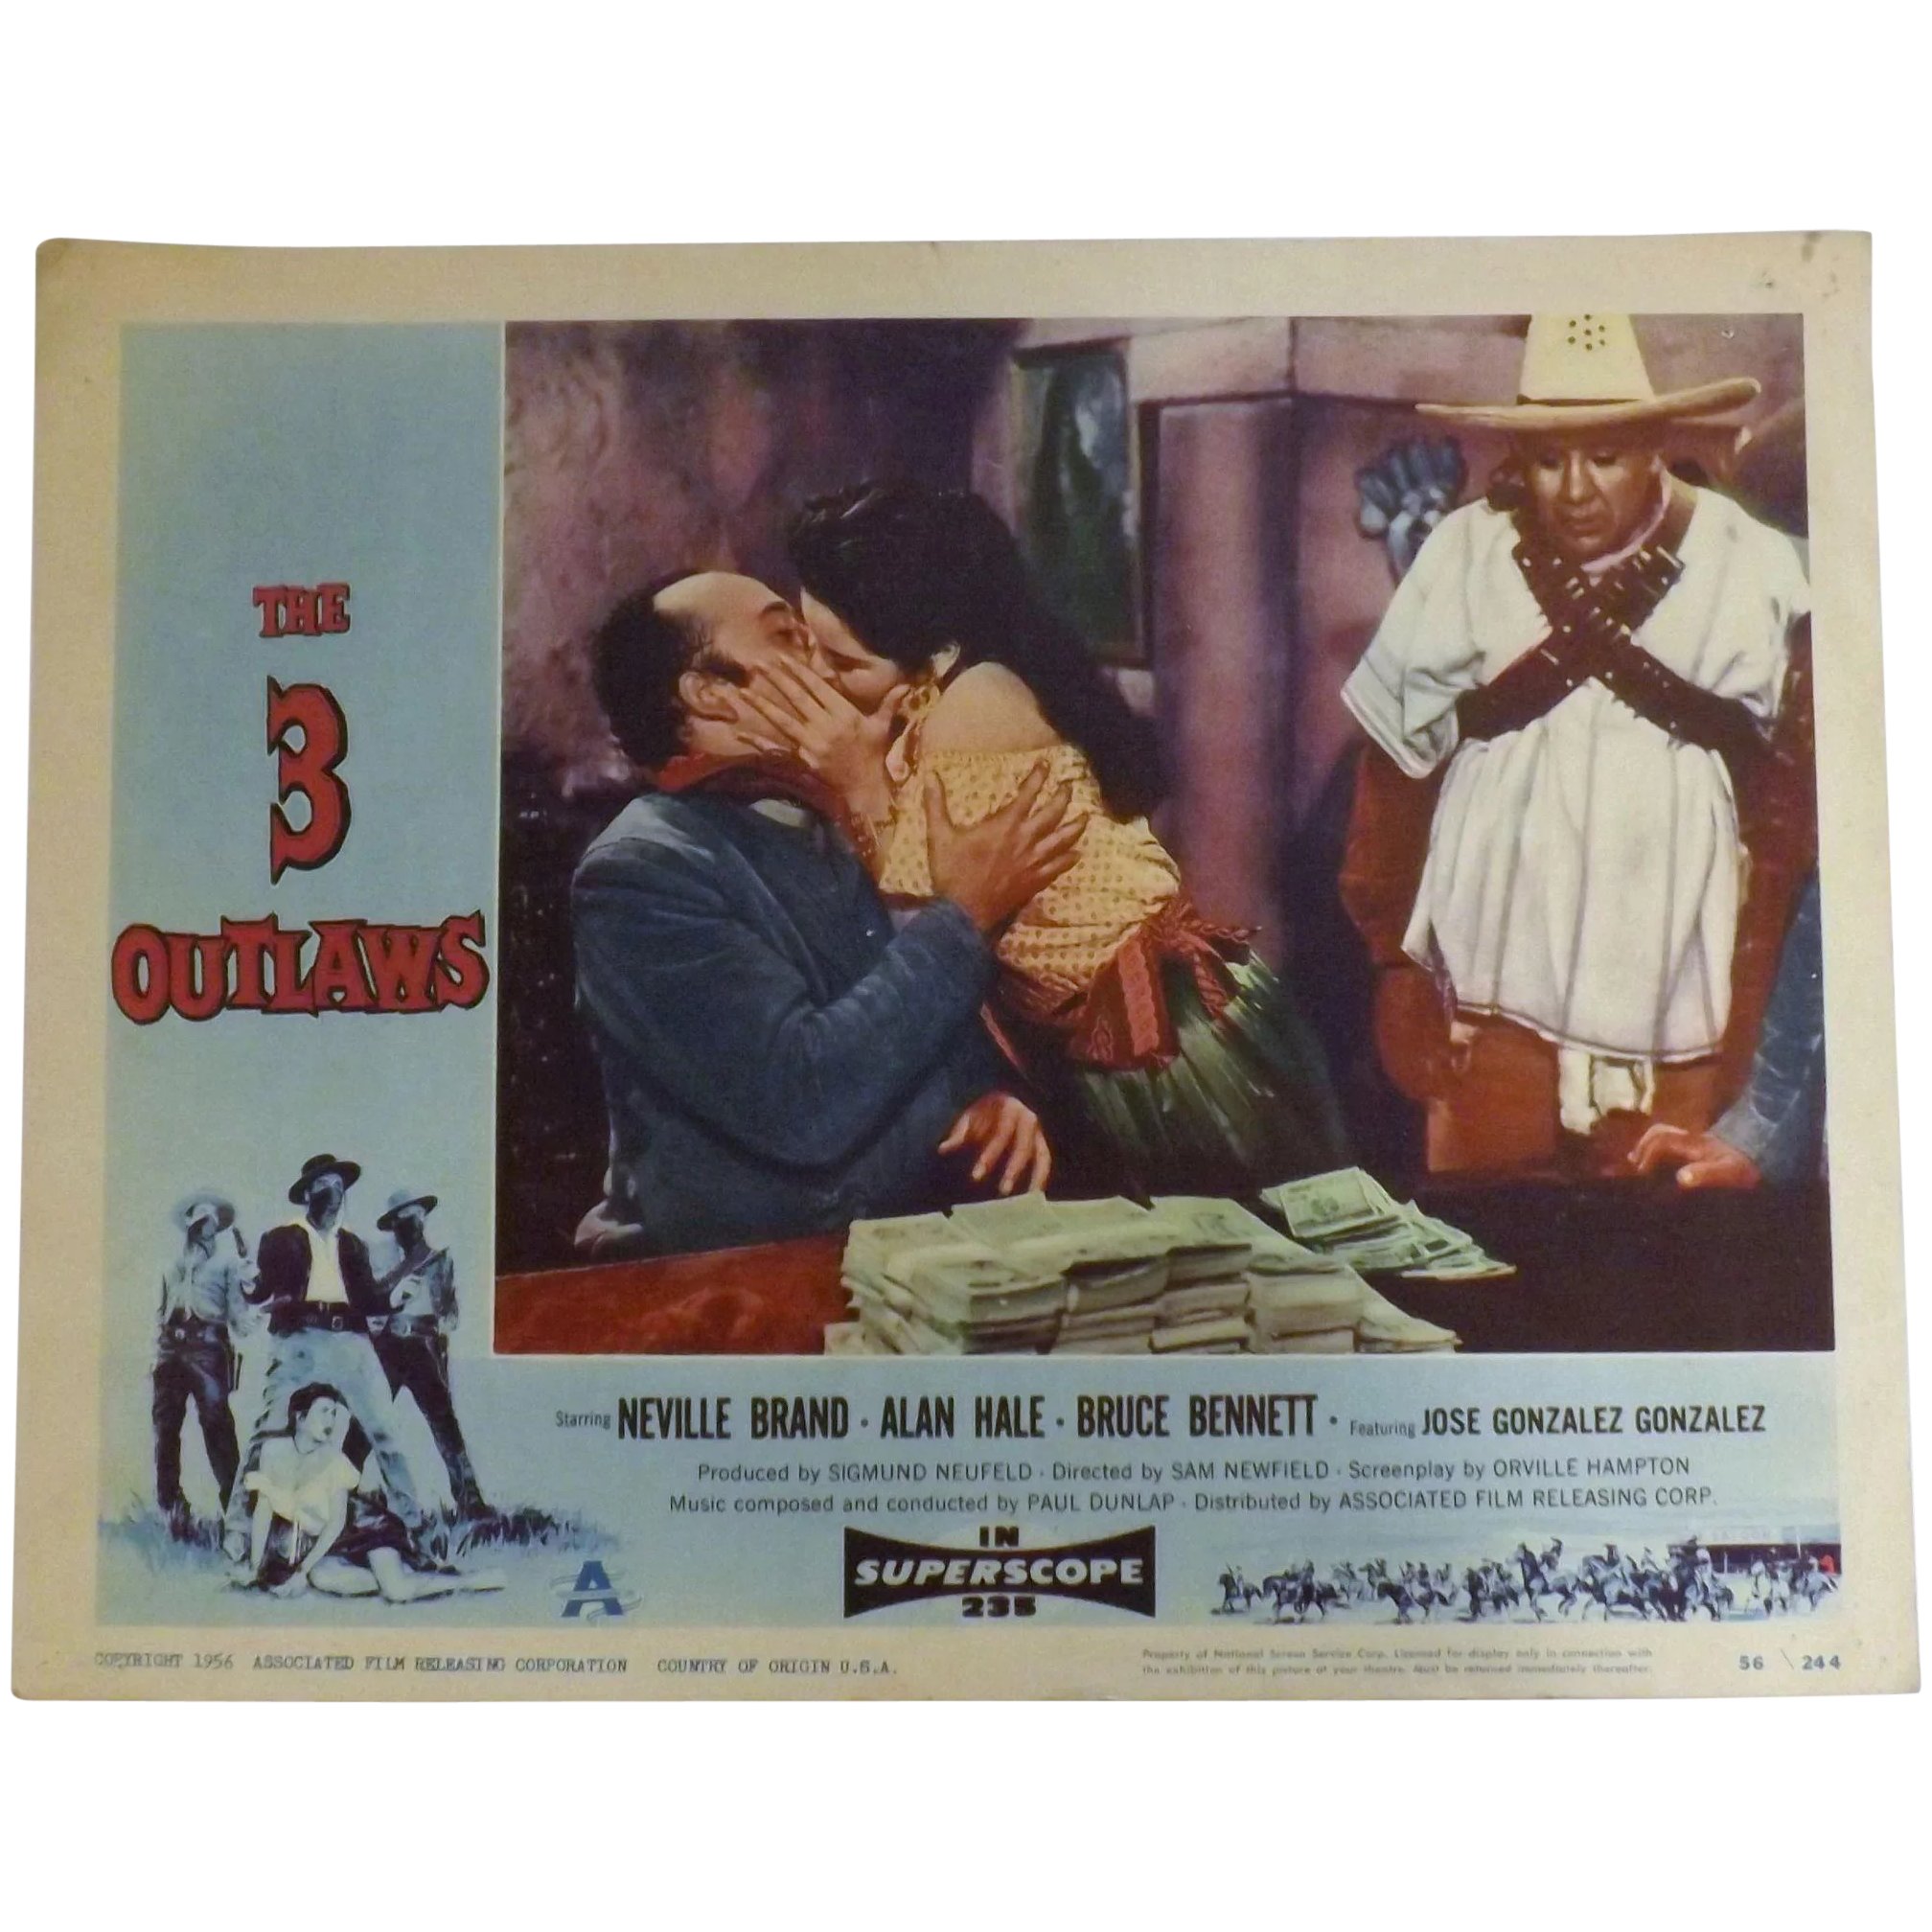 The 3 Outlaws -1956 Lobby Card